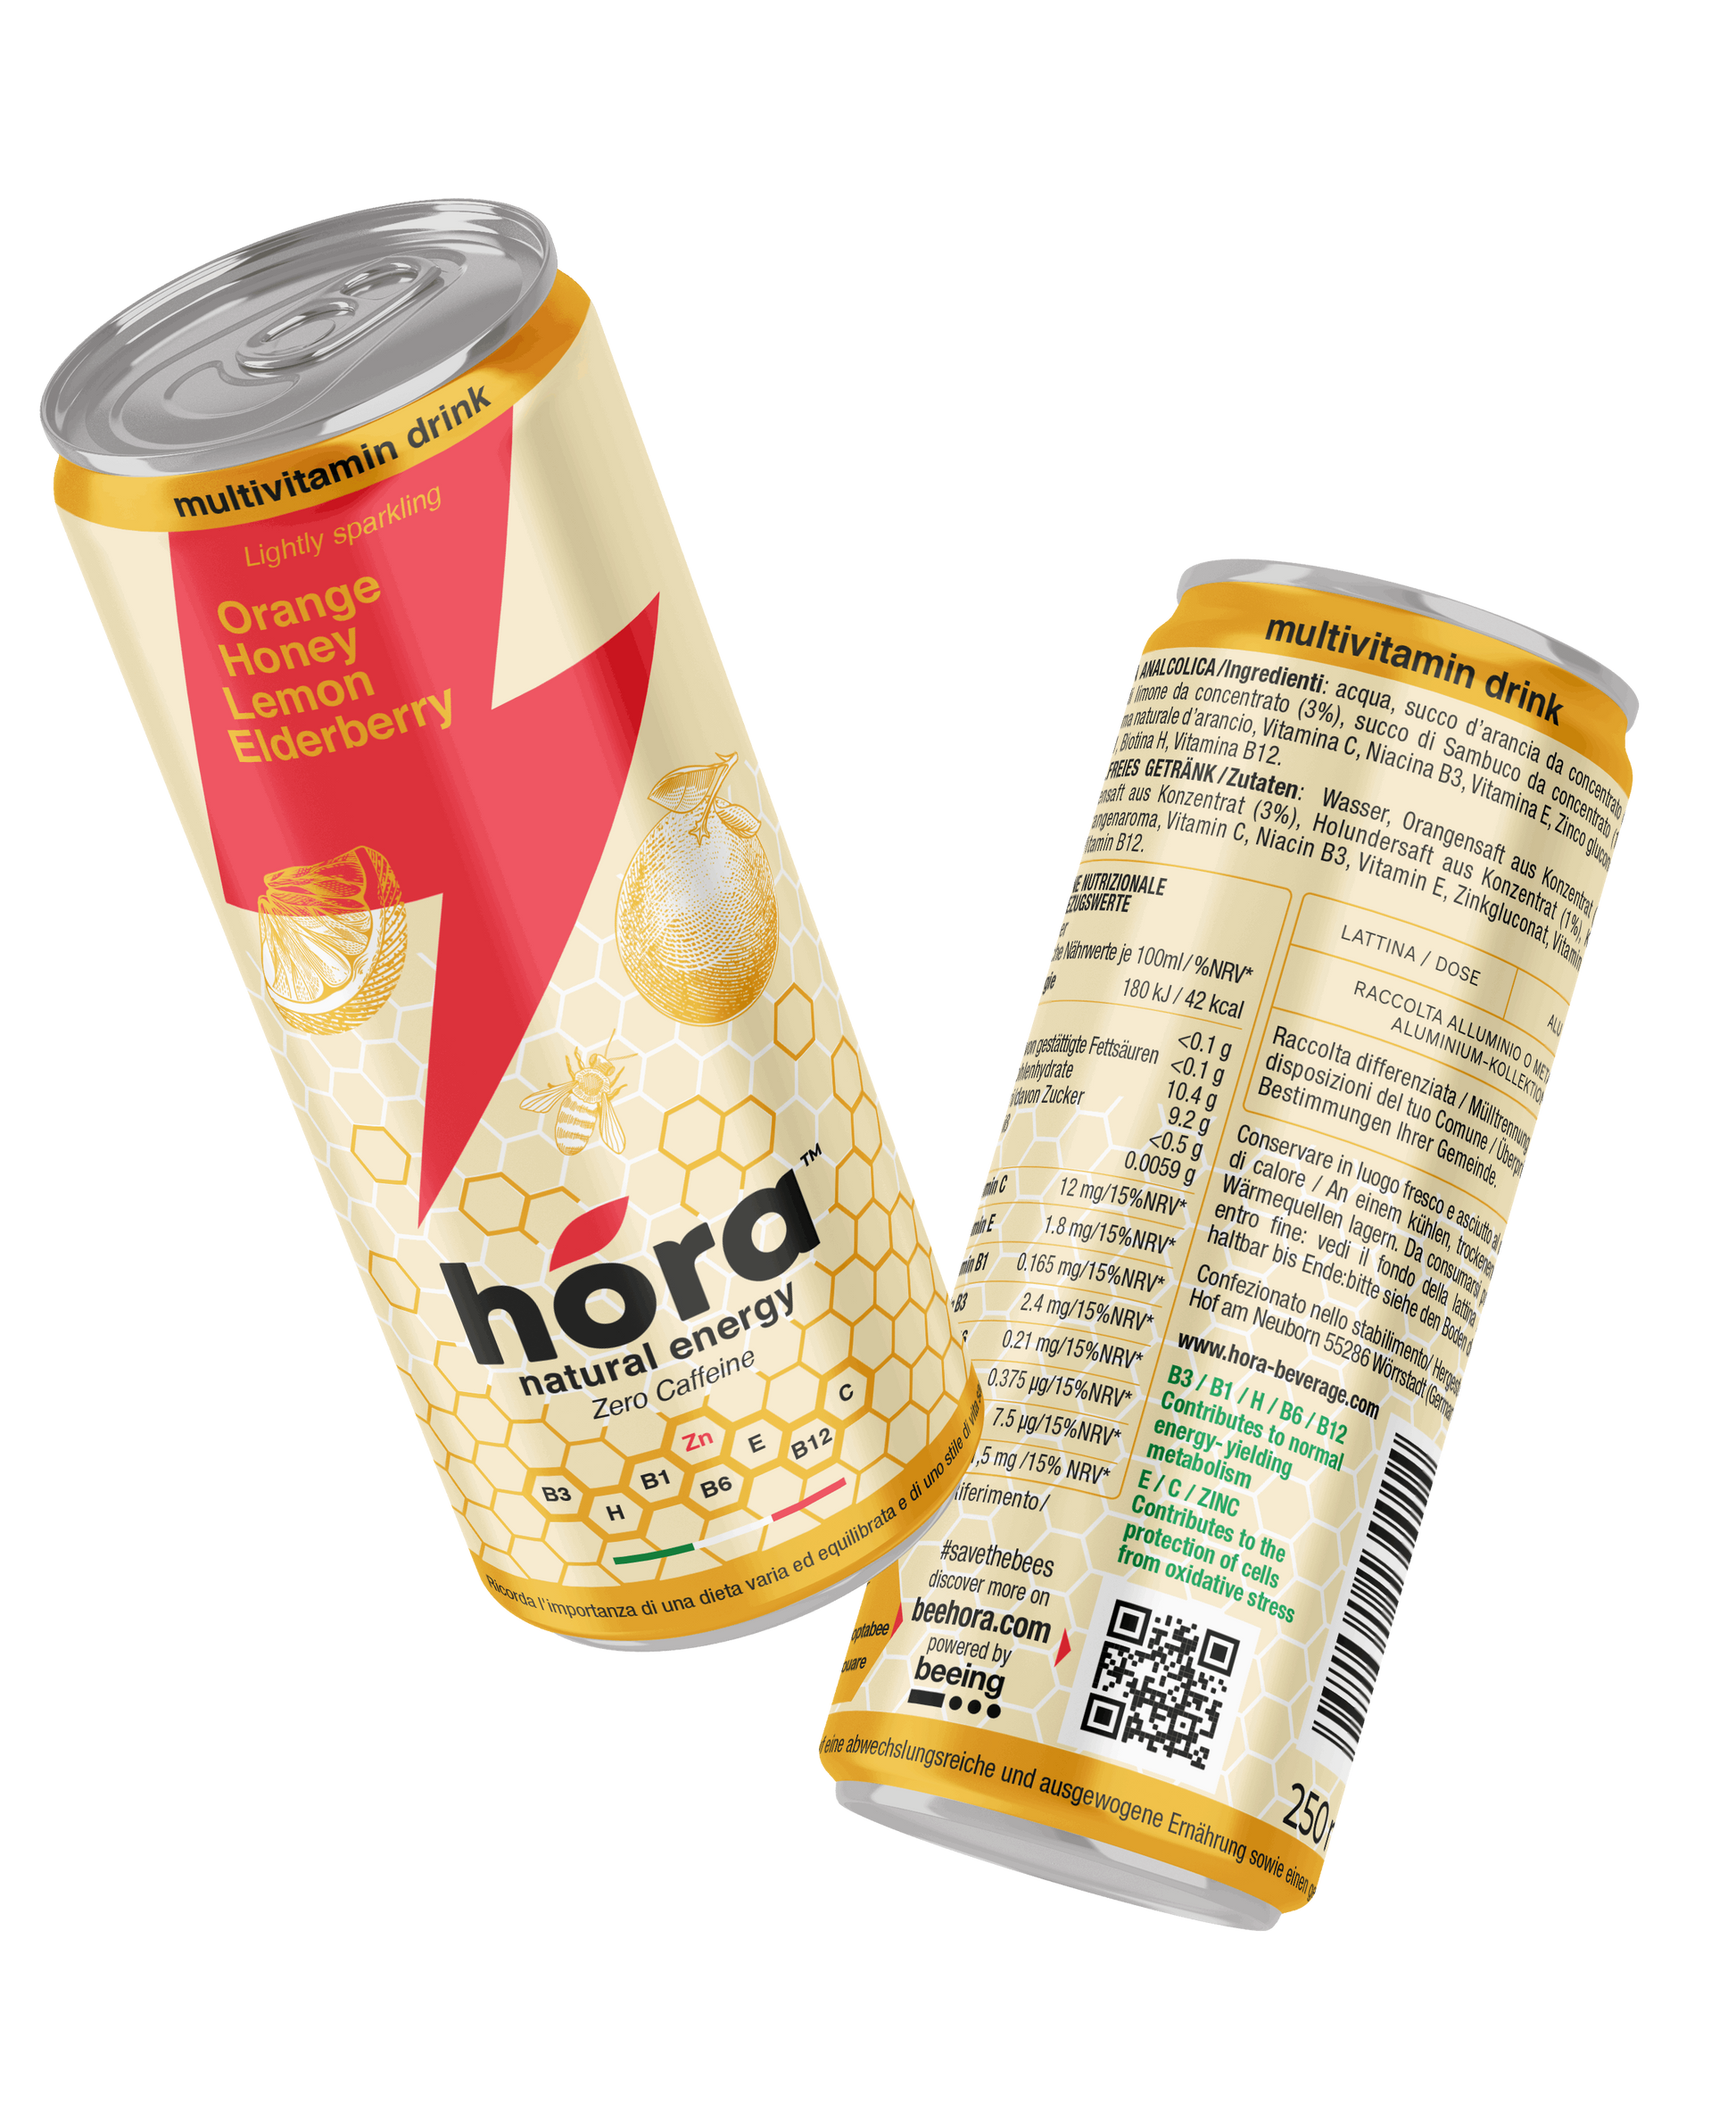 HÓRA Beverage - Healthy Drink - I migliori prodotti Made in Italy da Fiera di Monza Shop - Solo 30€! Acquista subito su Fiera di Monza Shop!